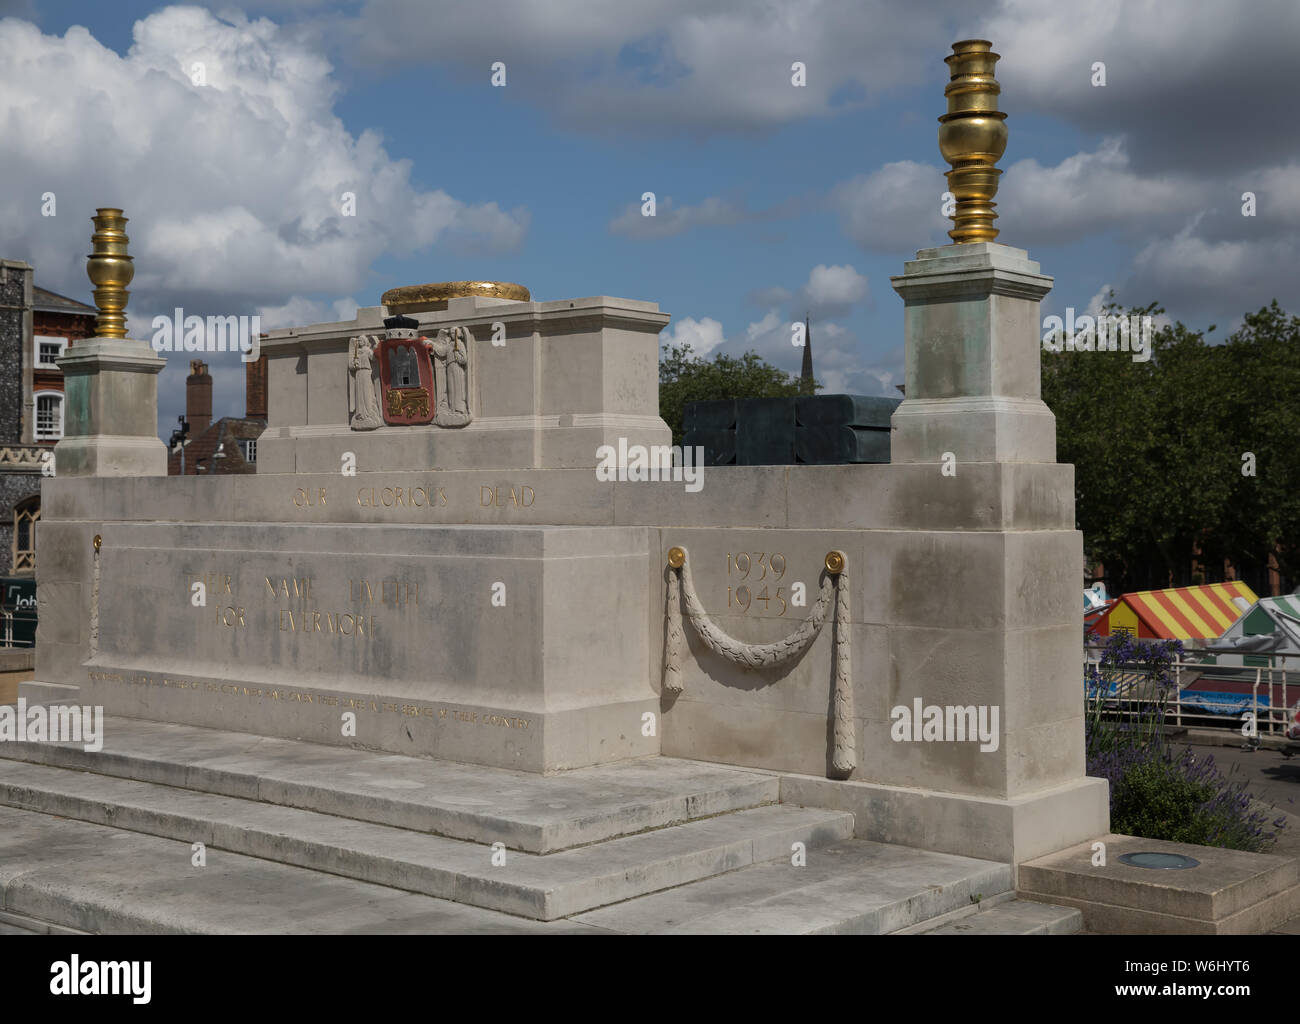 Norwich War Memorial is a First World War memorial in Norwich in Eastern England. It was designed by Sir Edwin Lutyens. Stock Photo